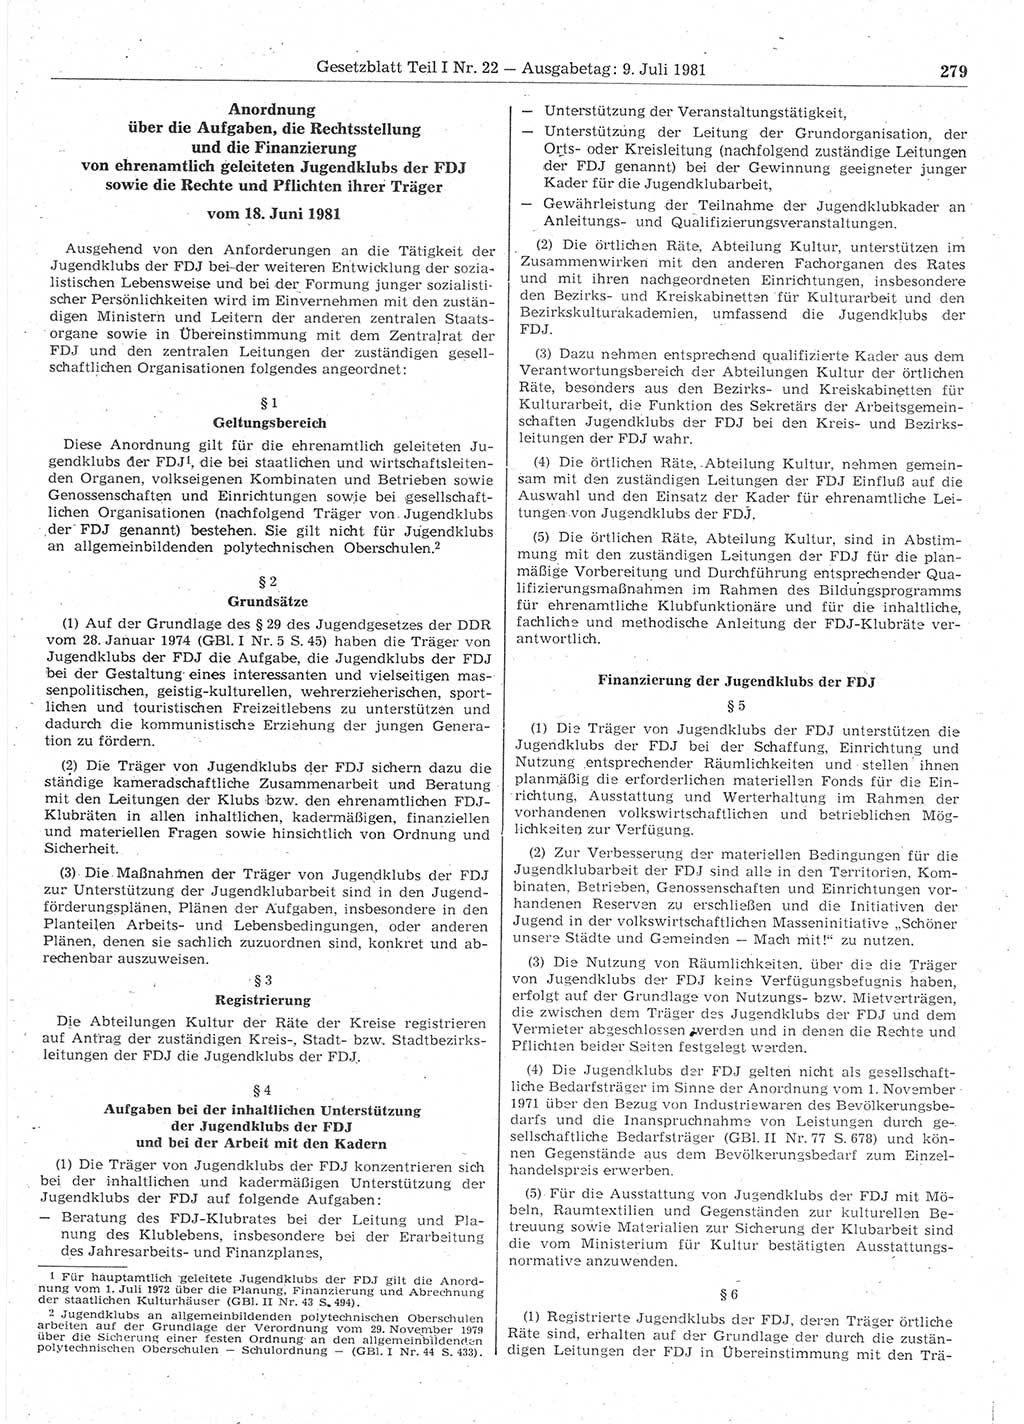 Gesetzblatt (GBl.) der Deutschen Demokratischen Republik (DDR) Teil Ⅰ 1981, Seite 279 (GBl. DDR Ⅰ 1981, S. 279)